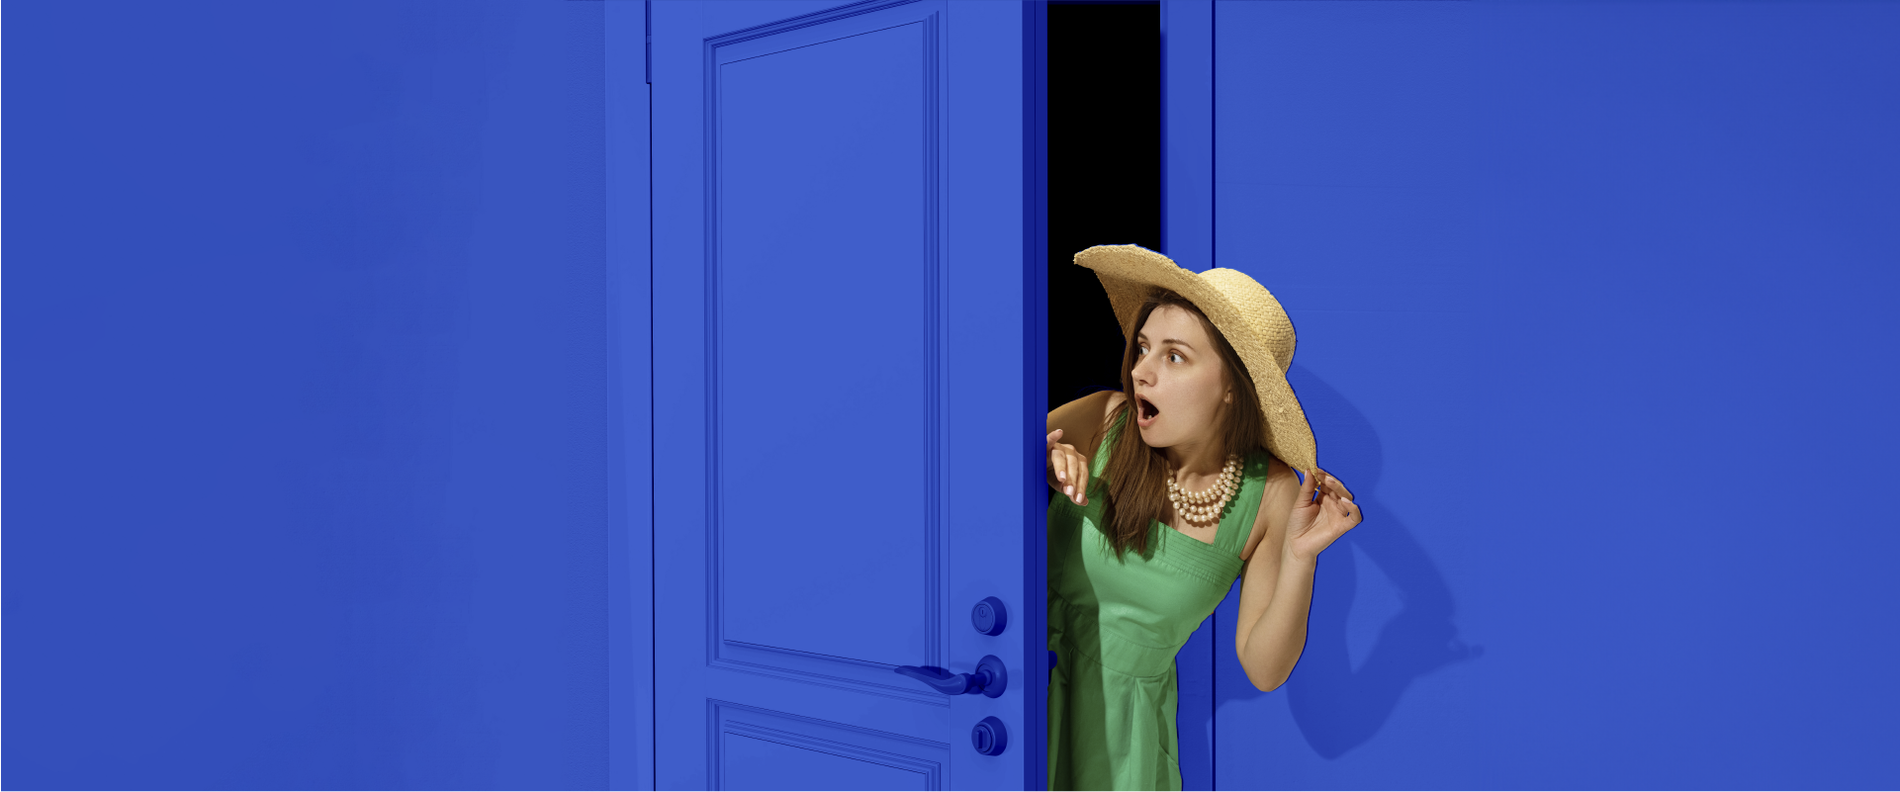 una mujer con sombrero y vestido verde sale de una puerta azul